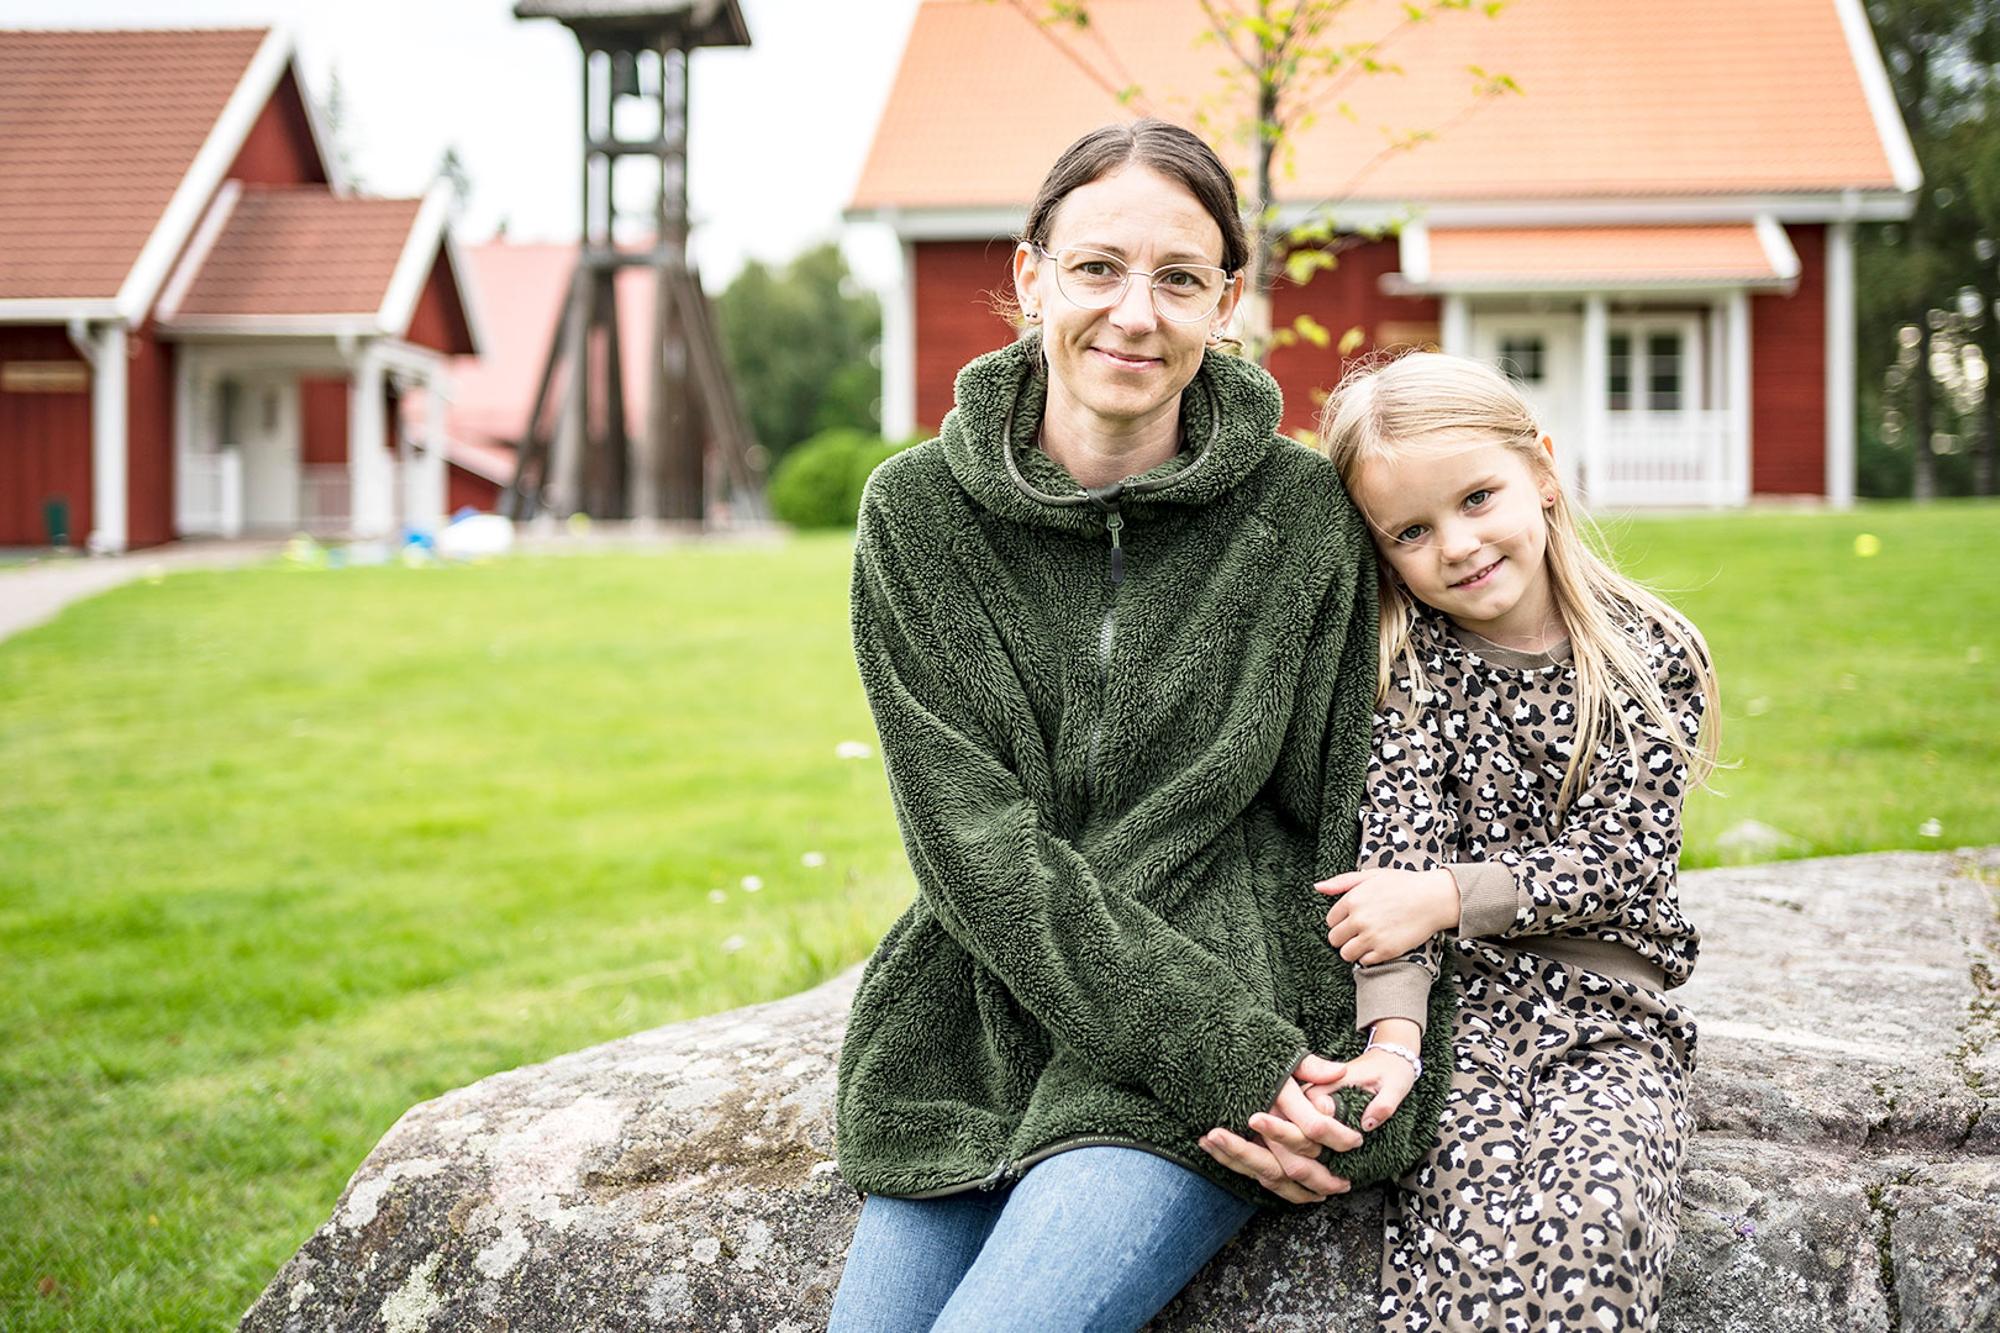 Micéla sitter med dottern Celine på en sten framför en gräsmatta och några rödmålade hus.